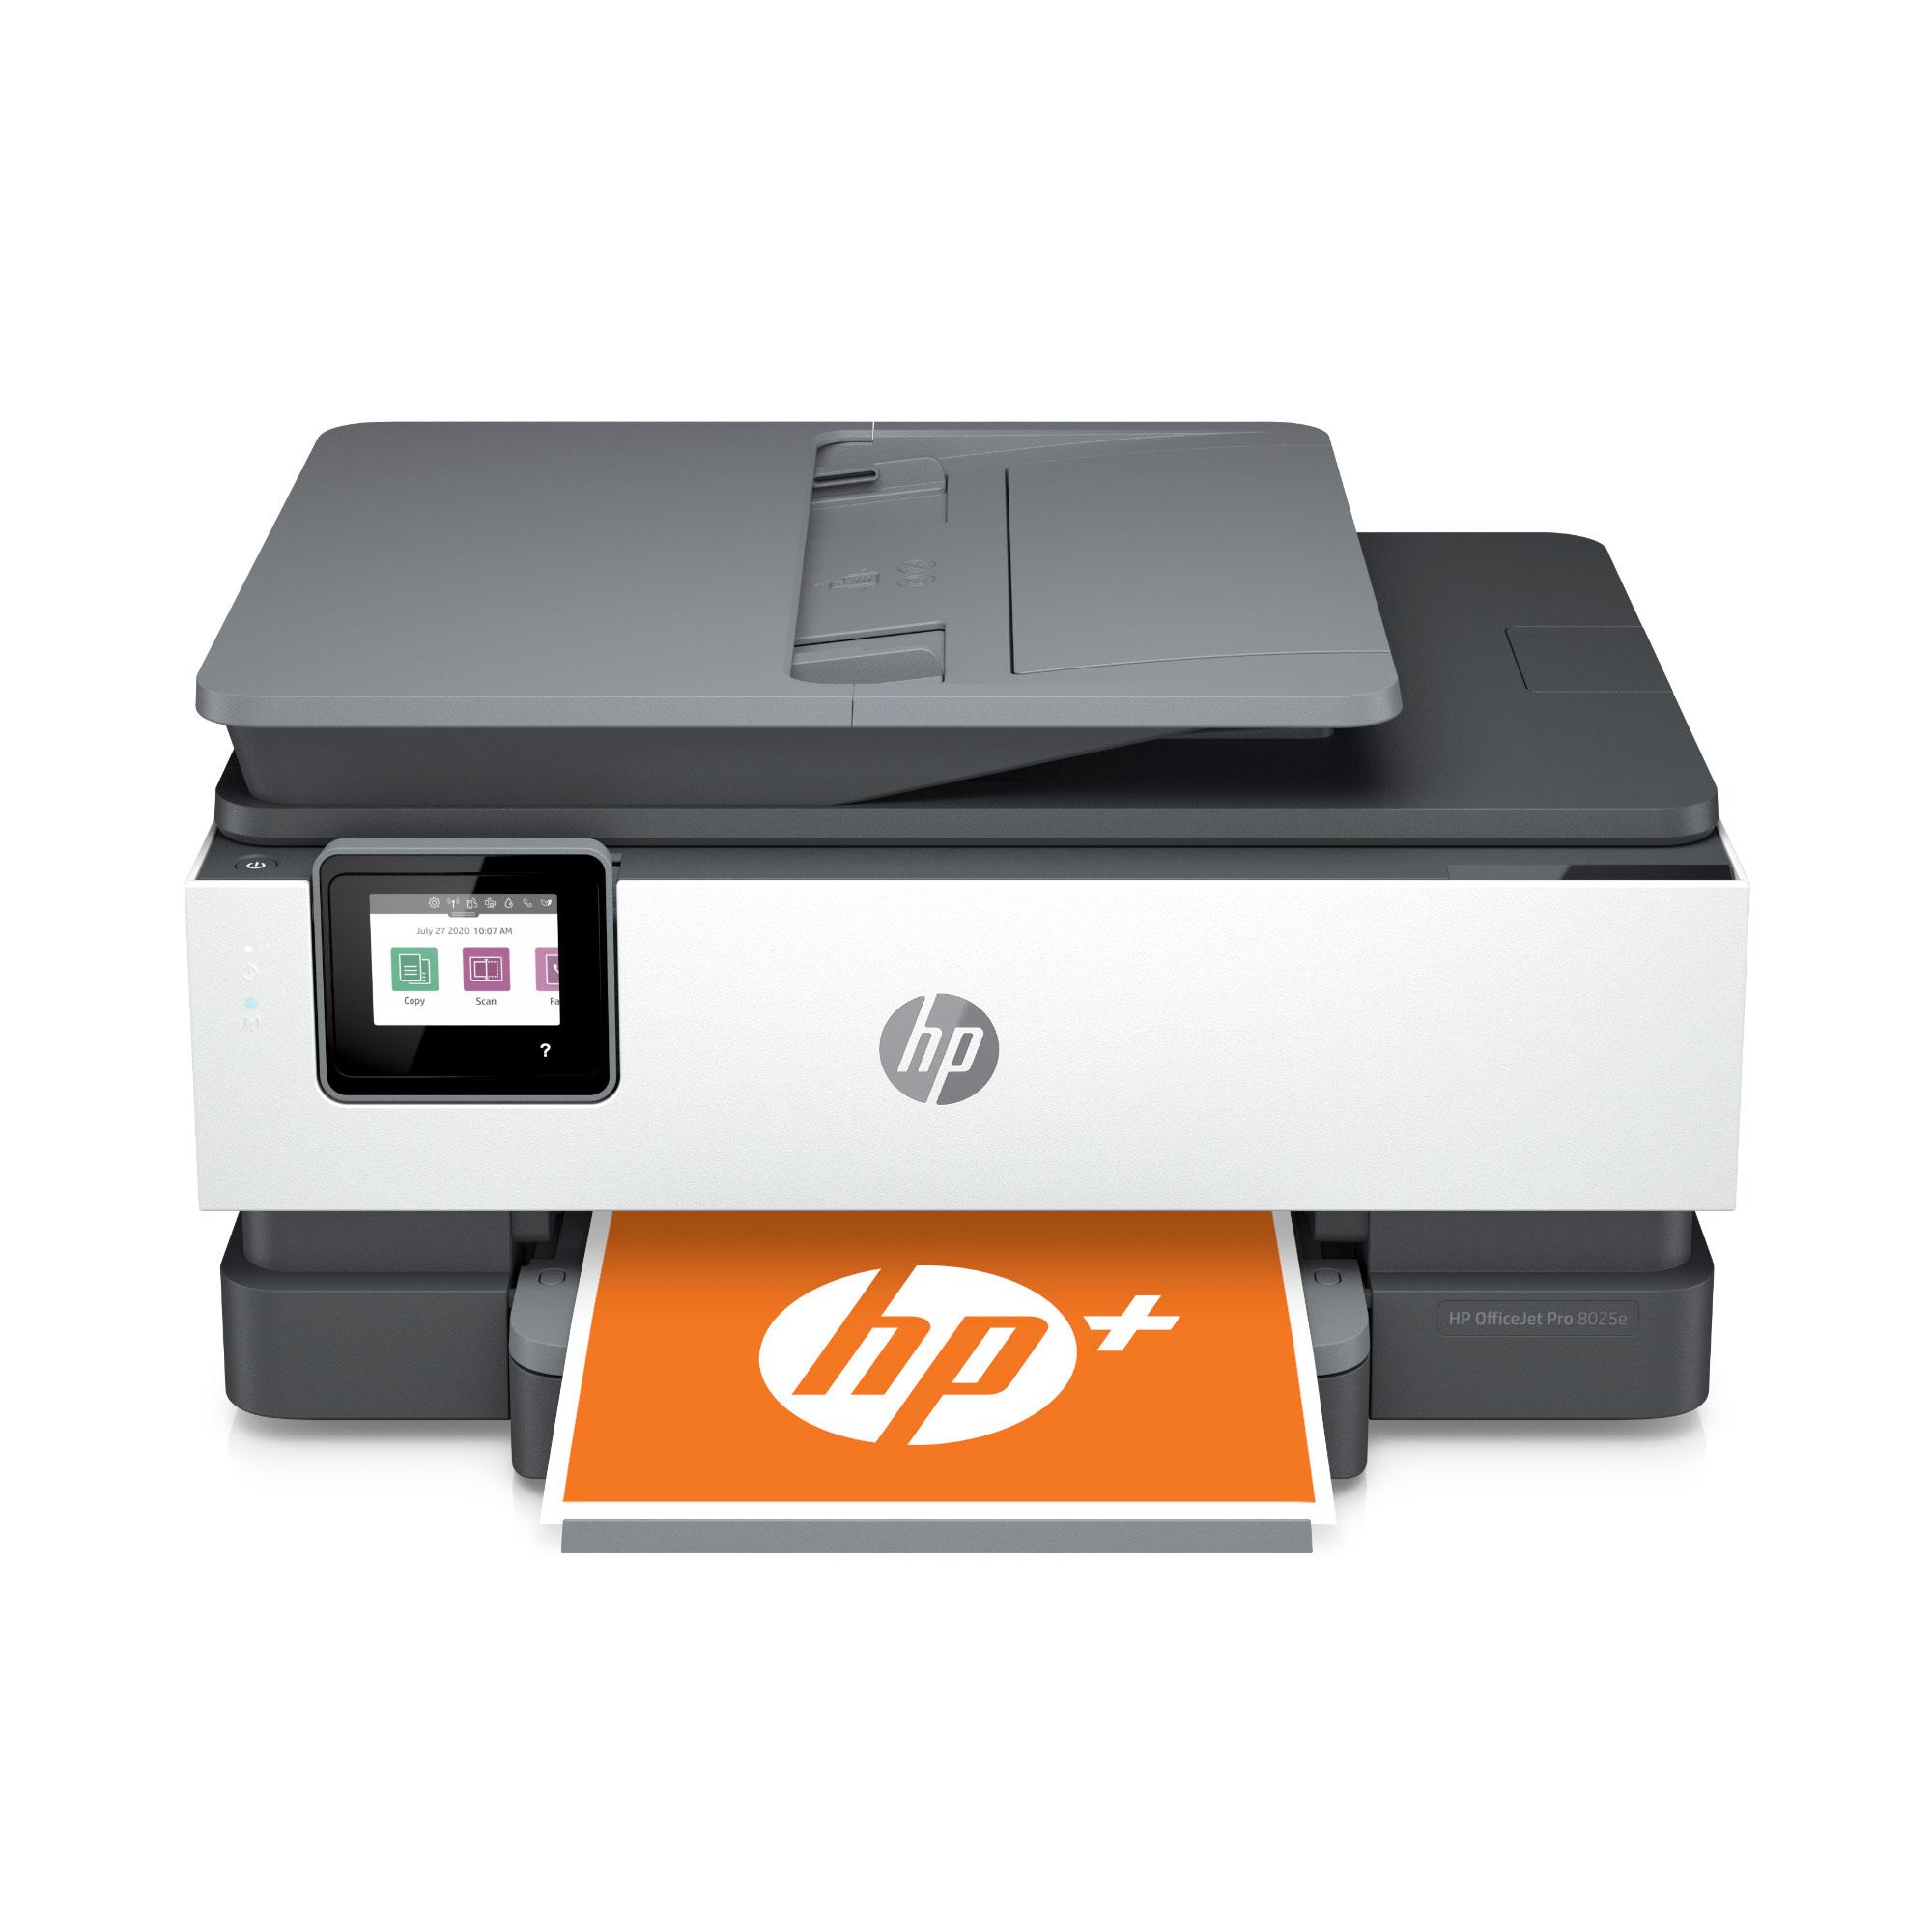 HP Officejet 8012e (HP Instant Ink), A4 tisk, sken, kopírování a fax. 18/10 ppm, wifi, duplex, ADF